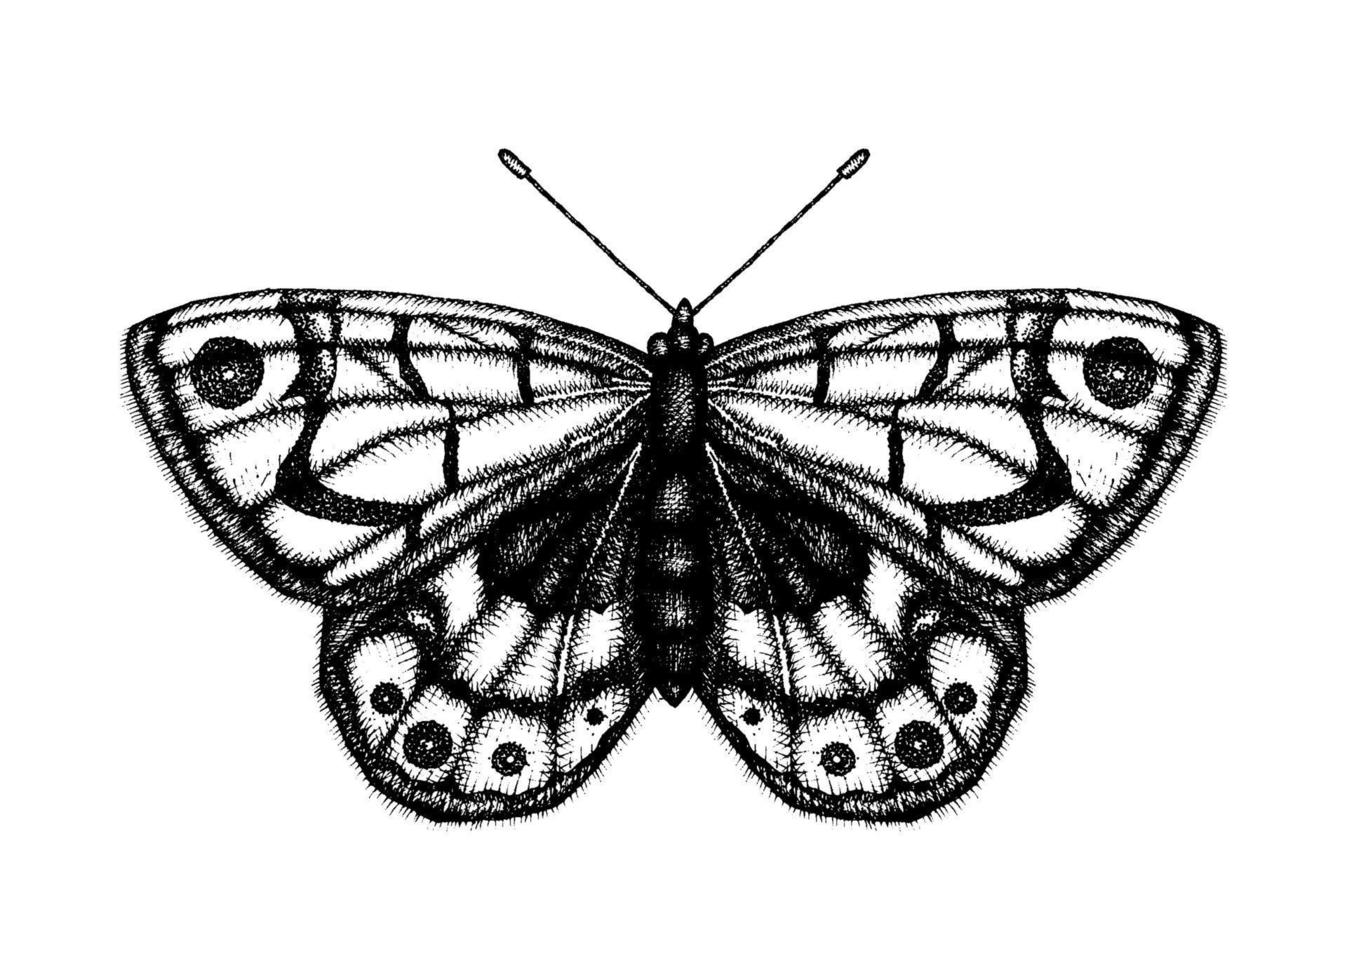 illustrazione vettoriale in bianco e nero di una farfalla. schizzo di insetto disegnato a mano. disegno grafico dettagliato della parete marrone in stile vintage.